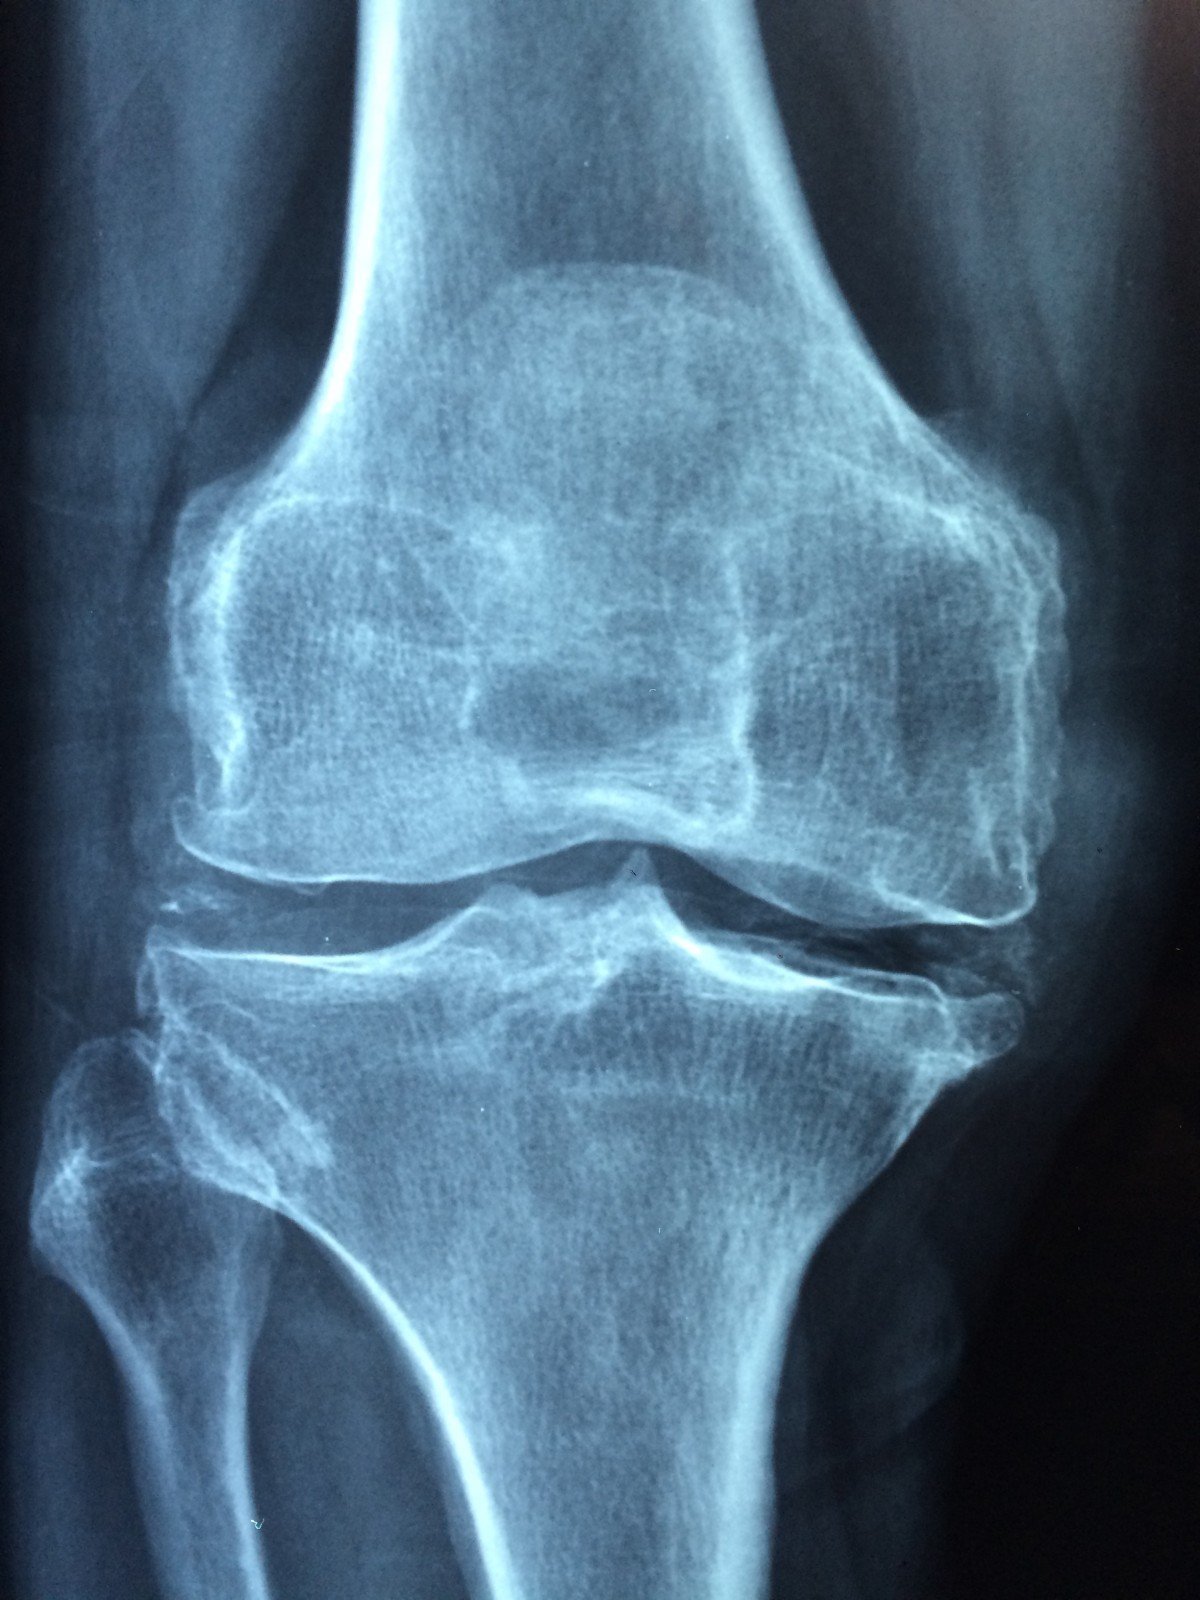 Placa de una rodilla. | Imagen: PxHere